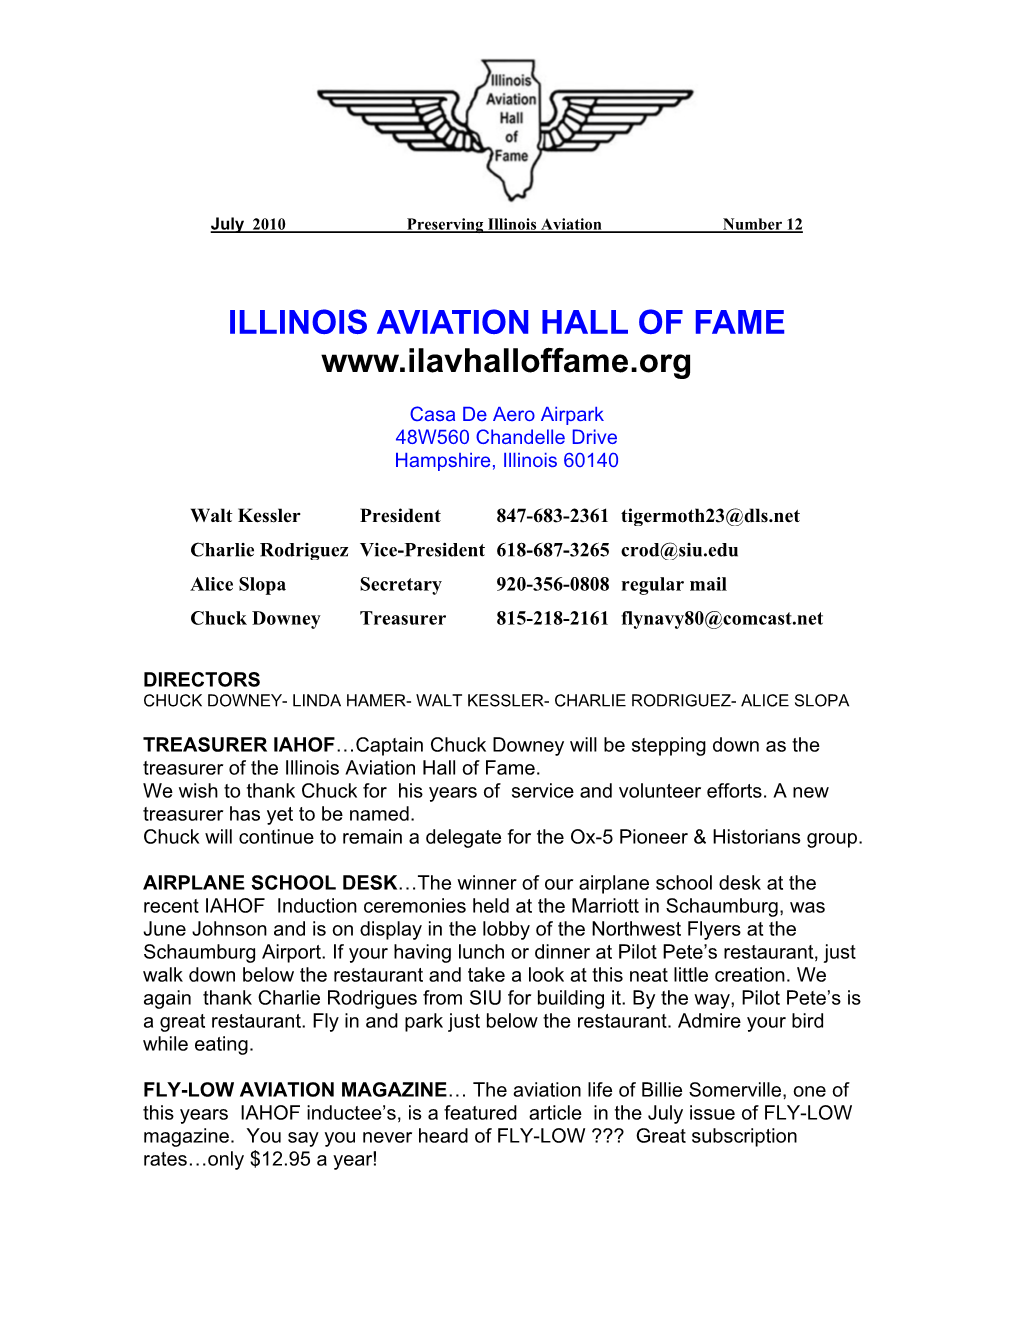 Illinois Aviation Hall of Fame